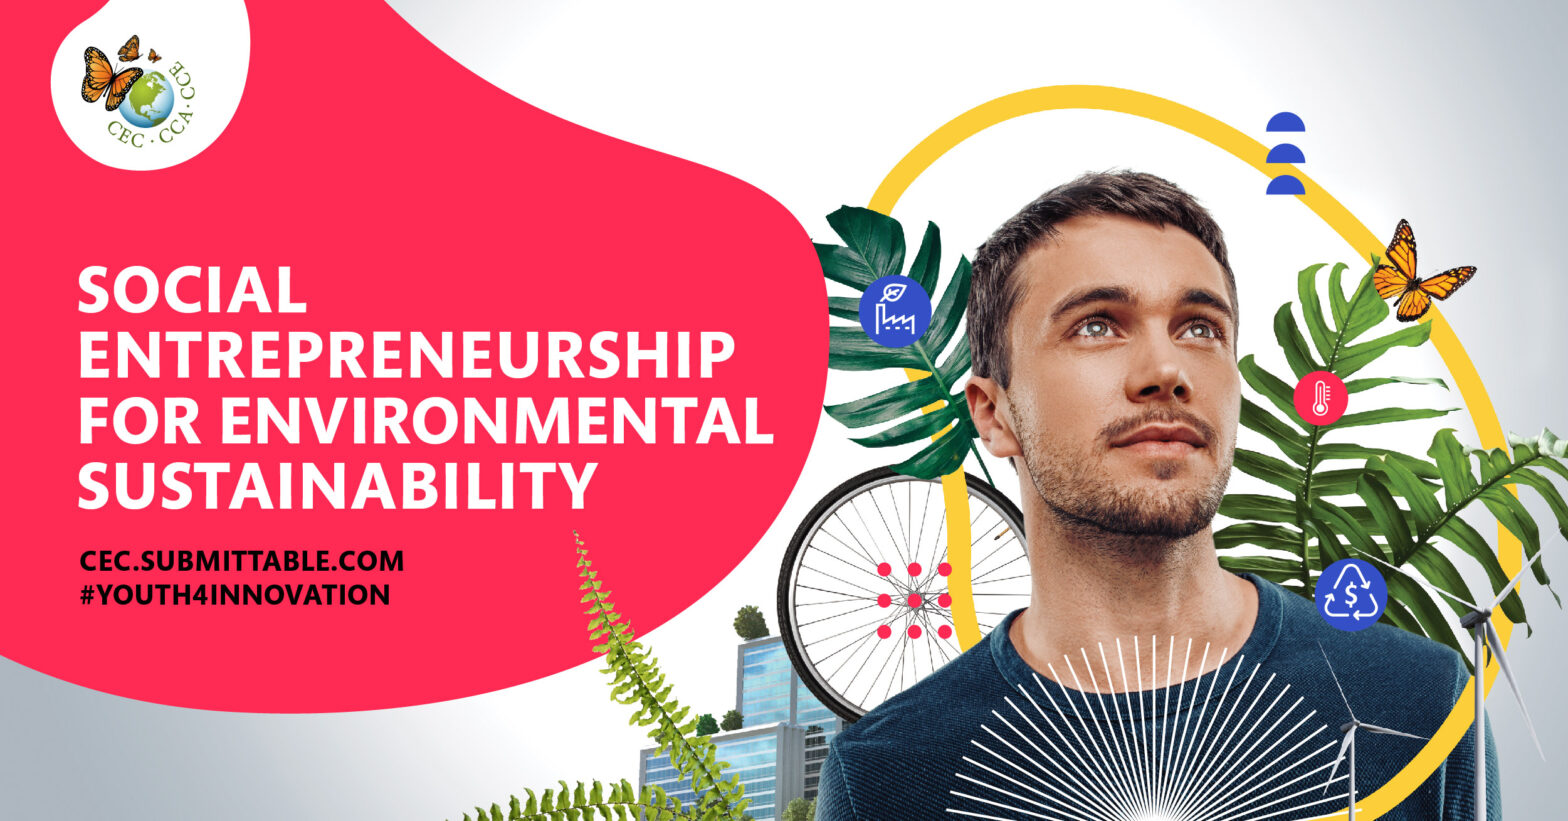 Social Entrepreneurship for Environmental Sustainability!